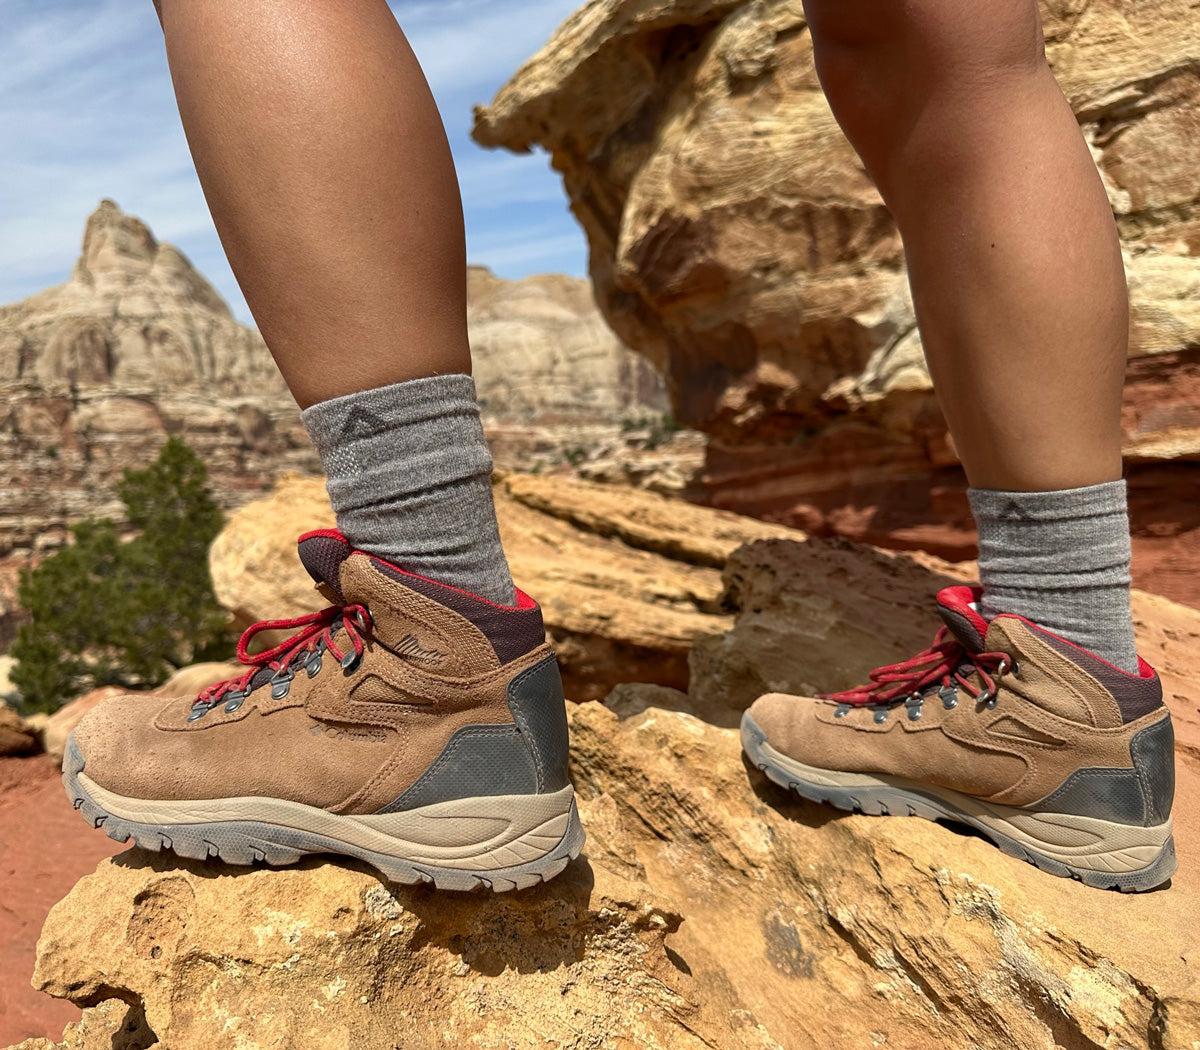 Wigwam sock wearer hiking in the mountains